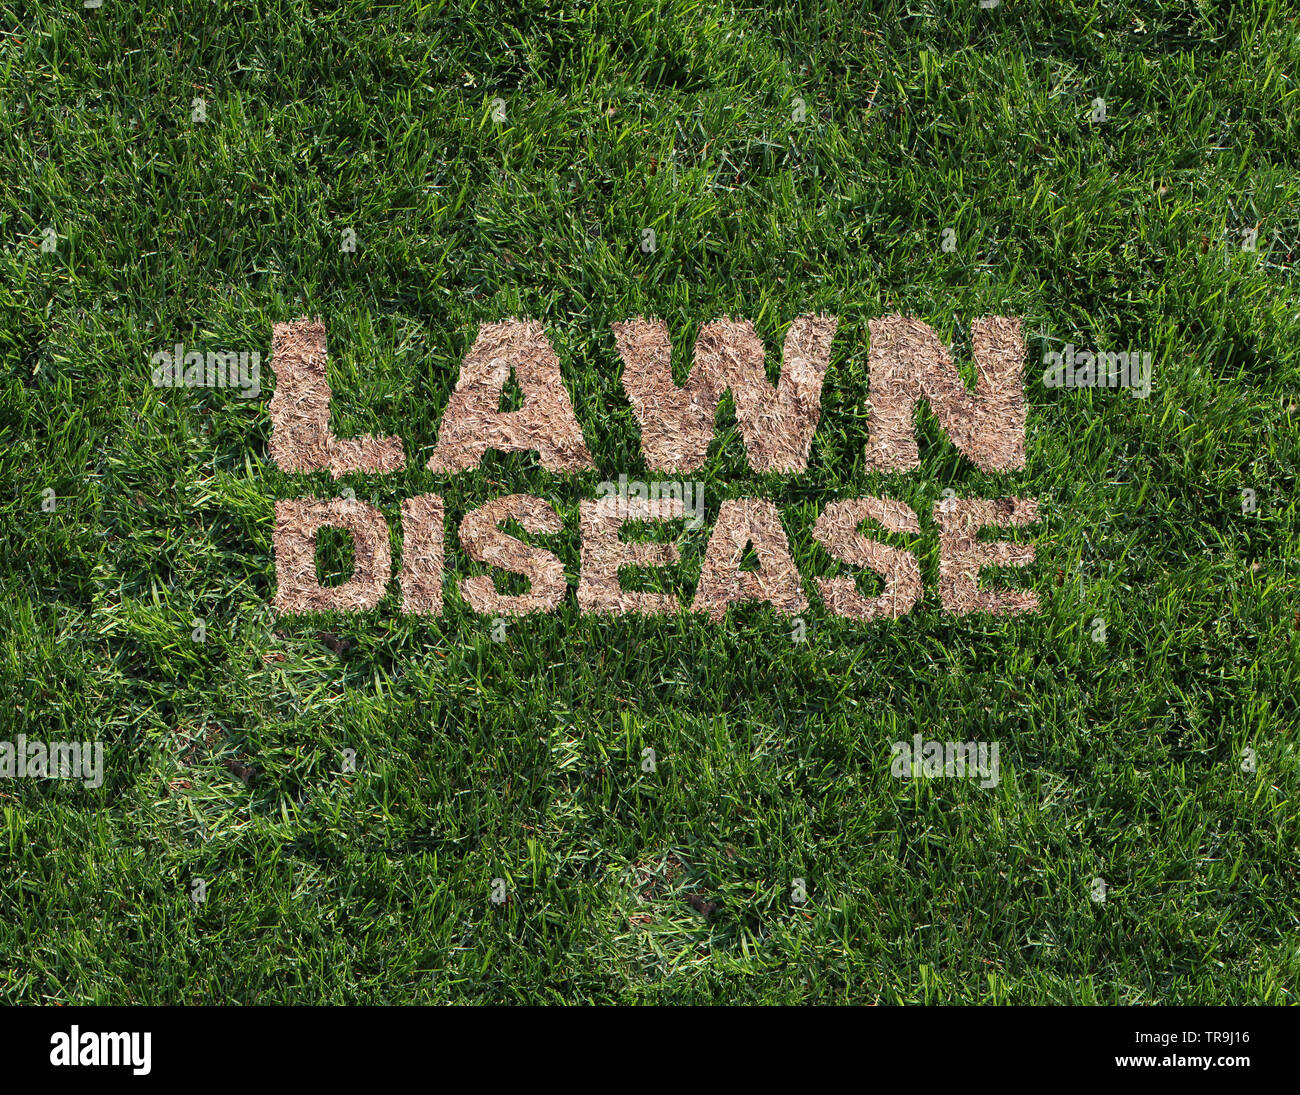 Rasen Krankheit als grub Schäden als chinch Larve beschädigen Gras Wurzeln verursacht eine braune Flecken und dürre Gegend im Rasen als zusammengesetzte Bild. Stockfoto